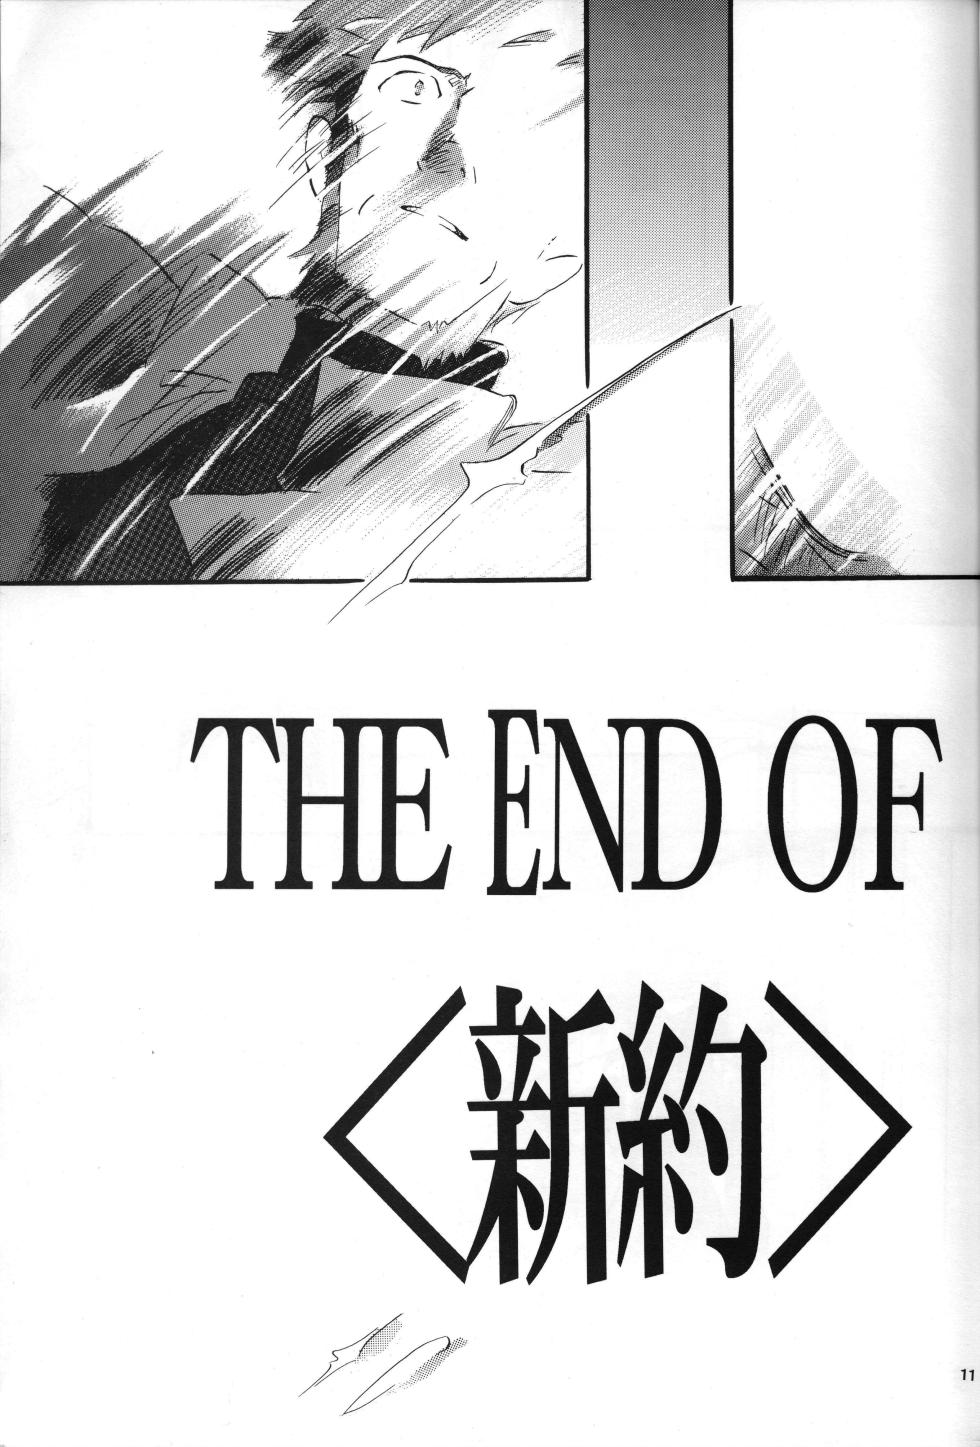 [PEPPY ANGEL (GRAN, Sakuratsuki Rin)] THE END OF PEPPY ANGEL <Shinyaku> NEON GENESIS documentＳ (Neon Genesis Evangelion) - Page 11